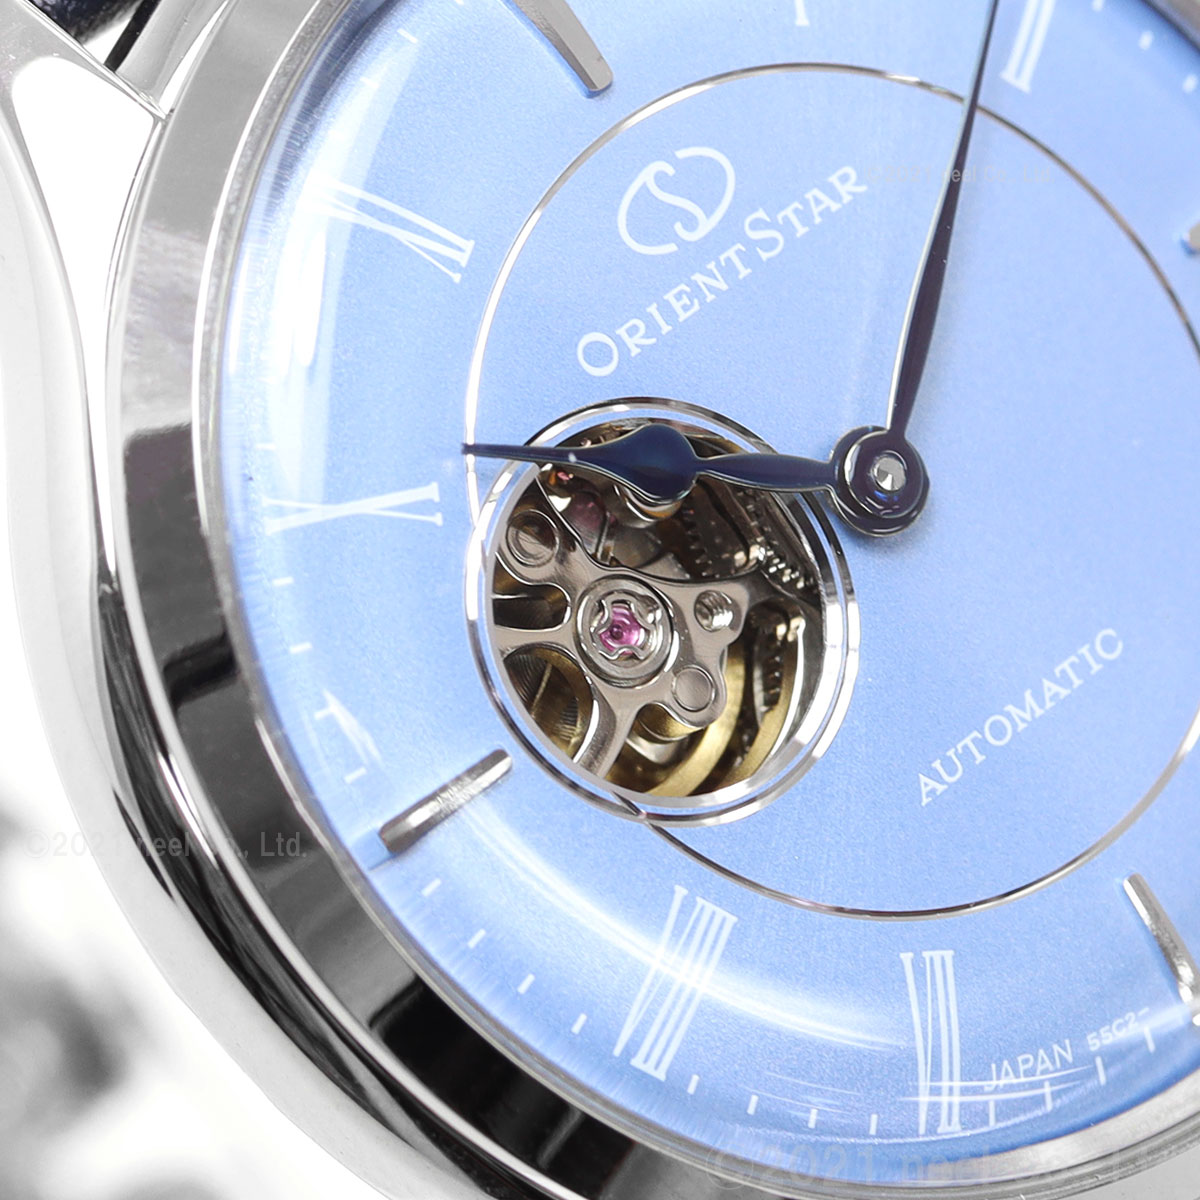 オリエントスター ORIENT STAR 腕時計 レディース 自動巻き 機械式 クラシック CLASSIC クラシックセミスケルトン RK-ND0012L